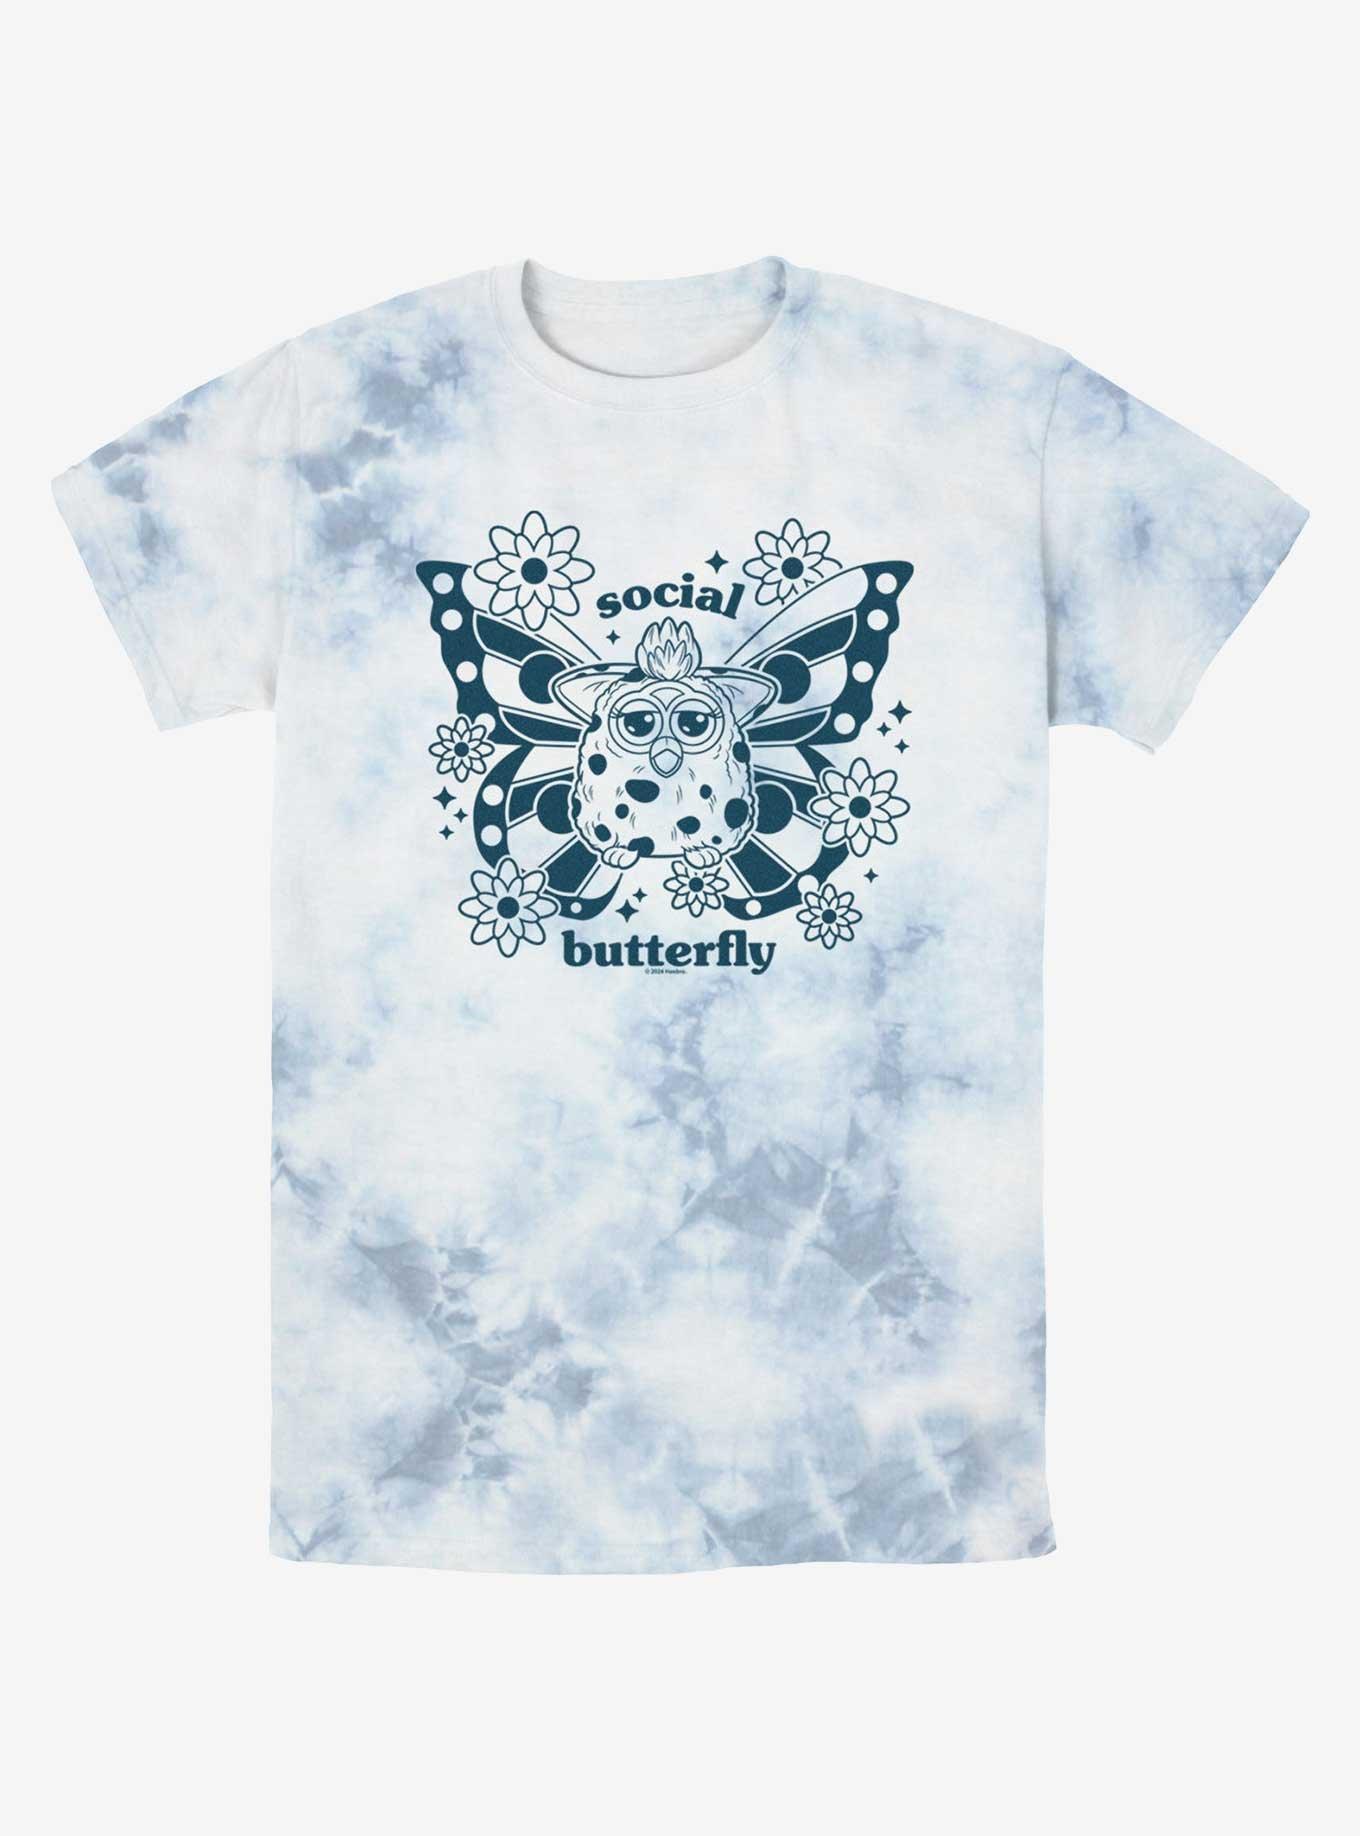 Furby Social Butterfly Tye-Dye T-Shirt, WHITEBLUE, hi-res